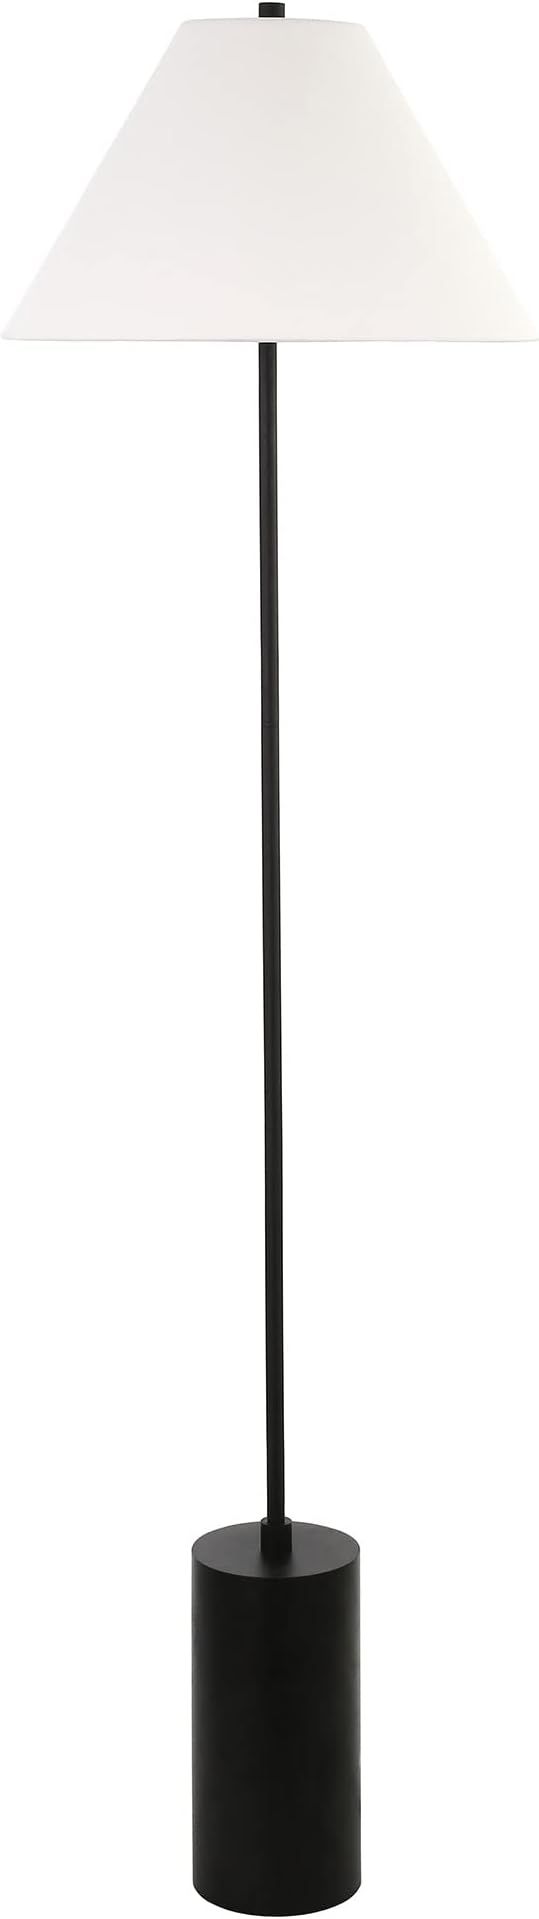 Henn&Hart 64" Tall Floor Lamp with Fabric Shade in Blackened Bronze/White | Amazon (US)